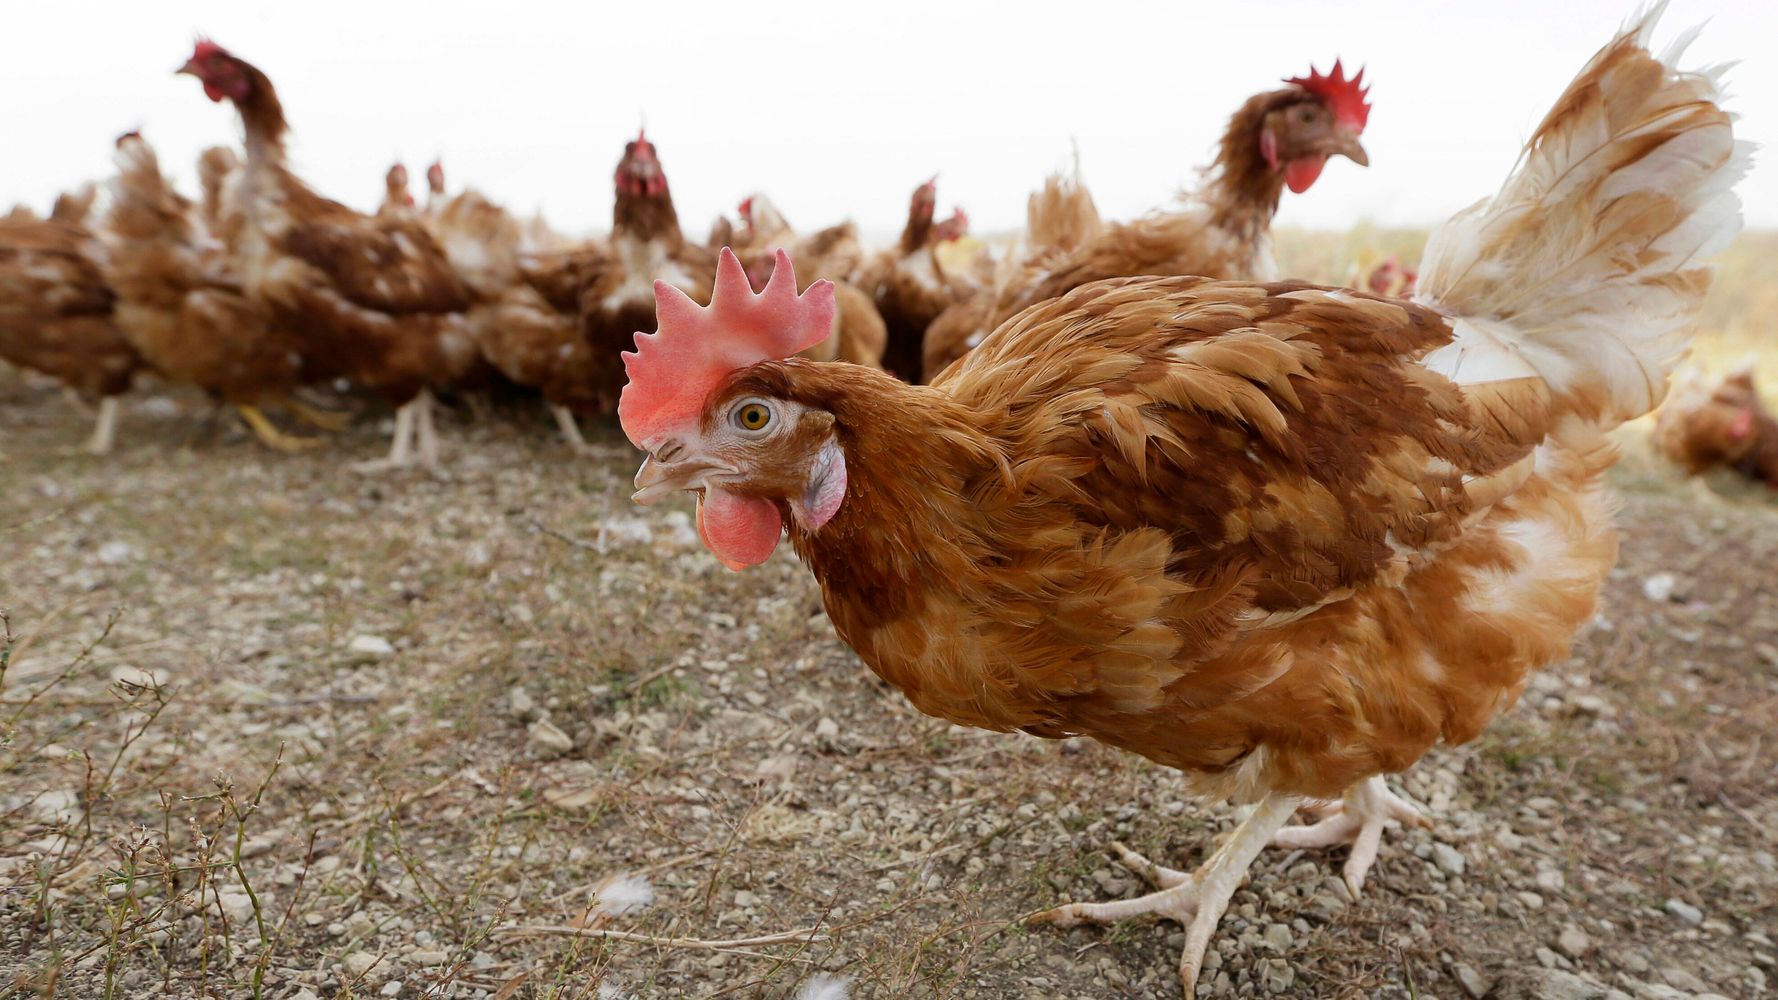 5,3 millones de pollos muertos en Iowa debido al brote de gripe aviar